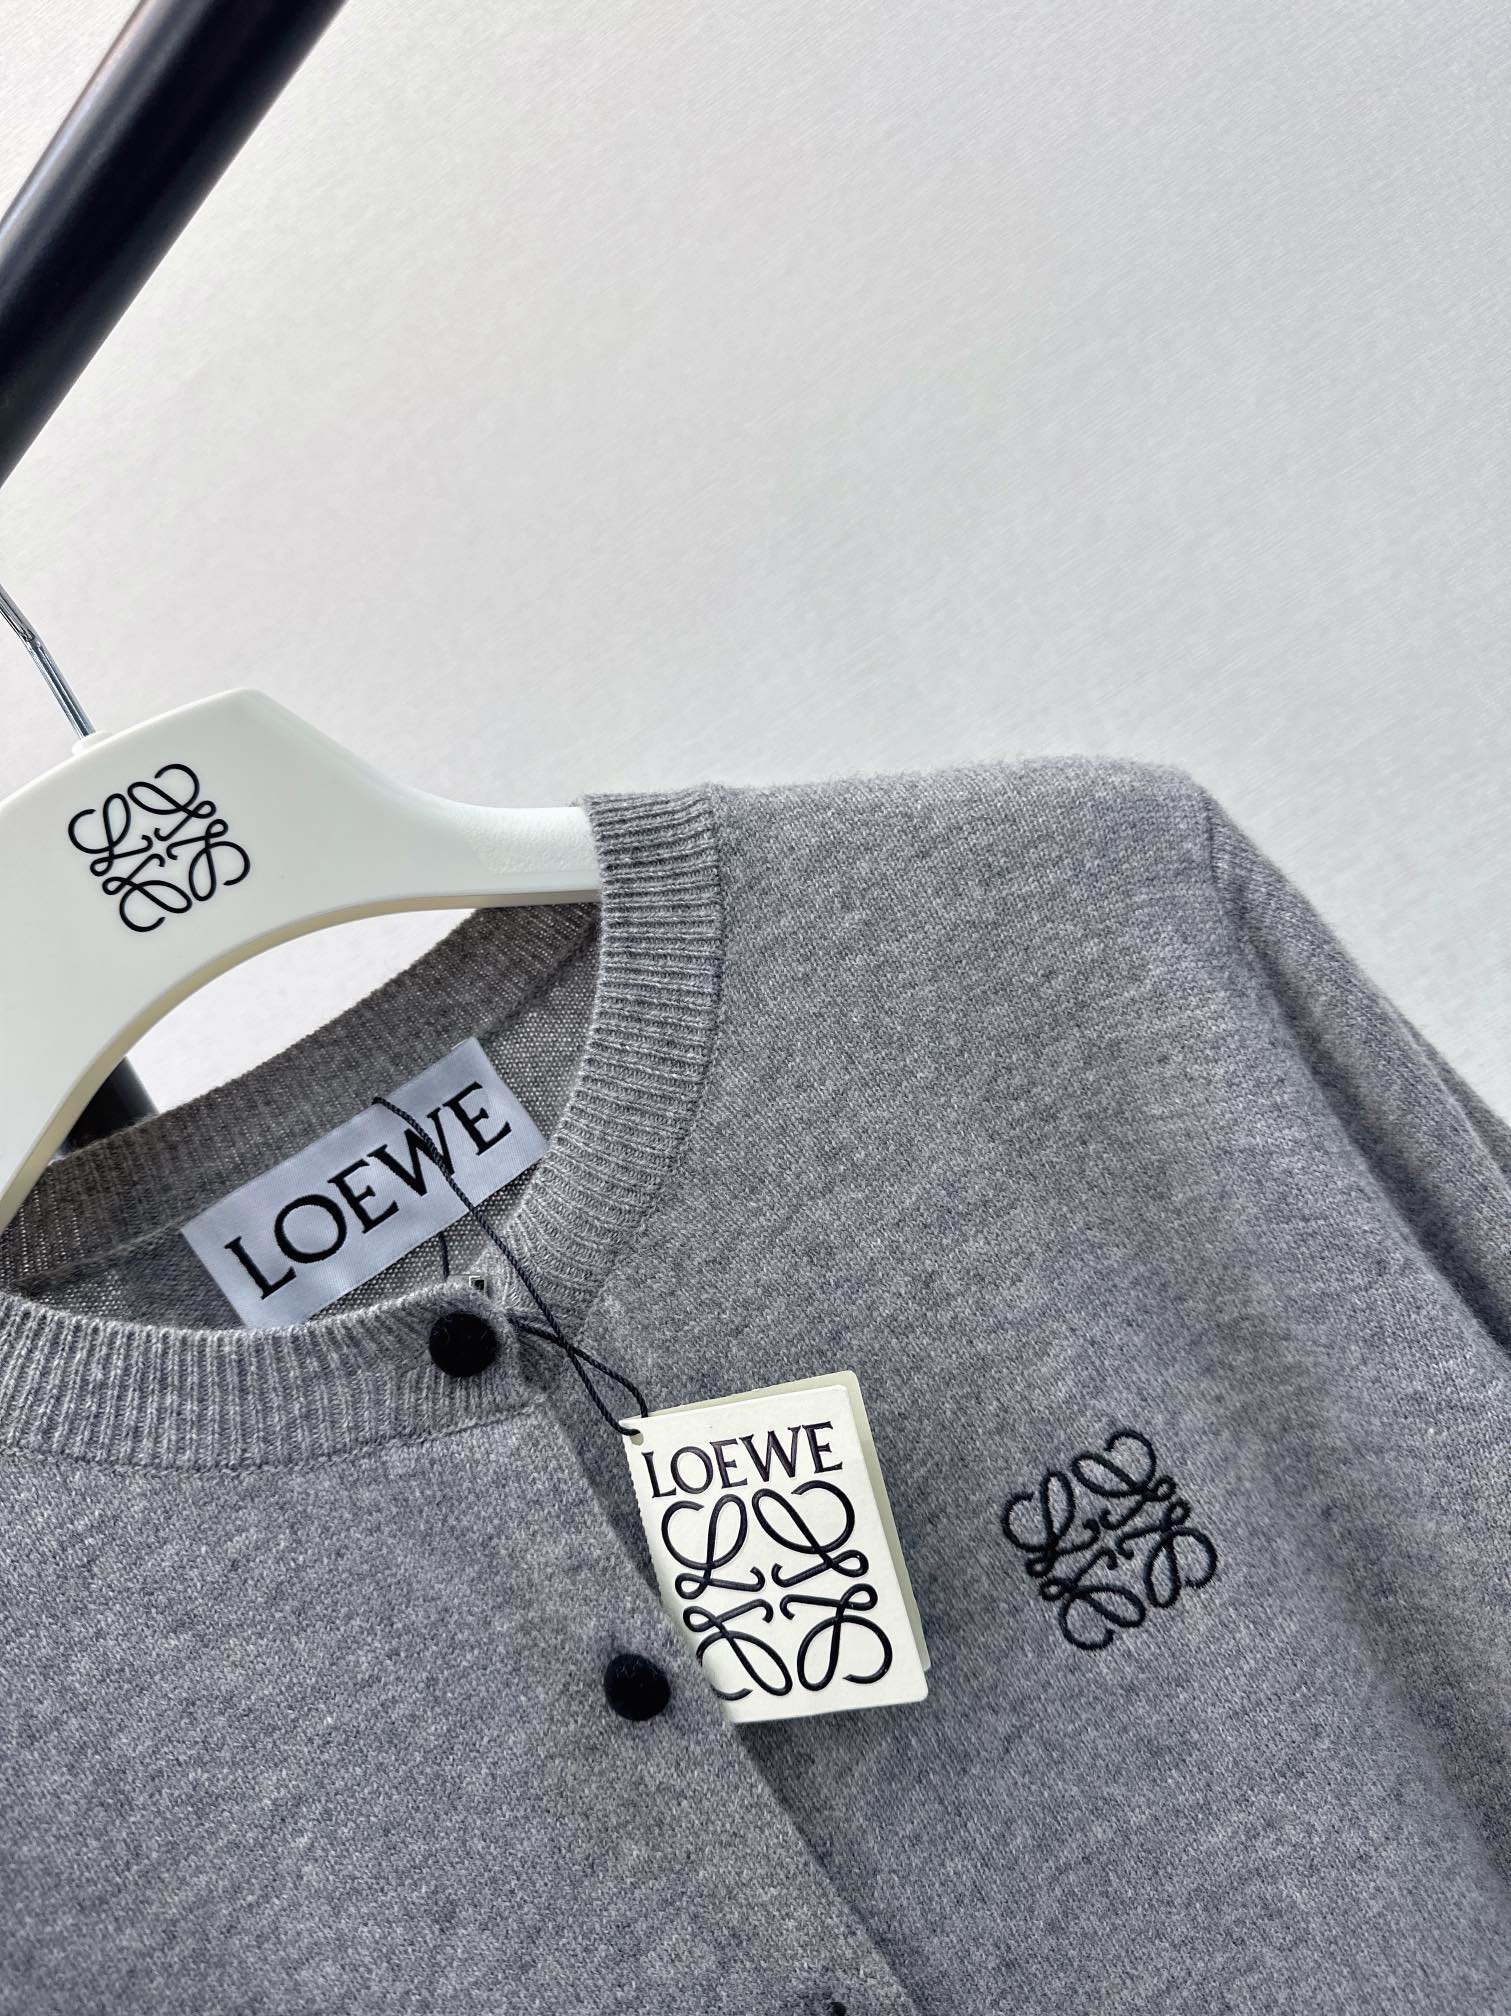 独家首发Loe24Ss早春最新款经典款开衫日常必备的百搭款标志性logo装饰休闲时髦！品质版型都是一流的